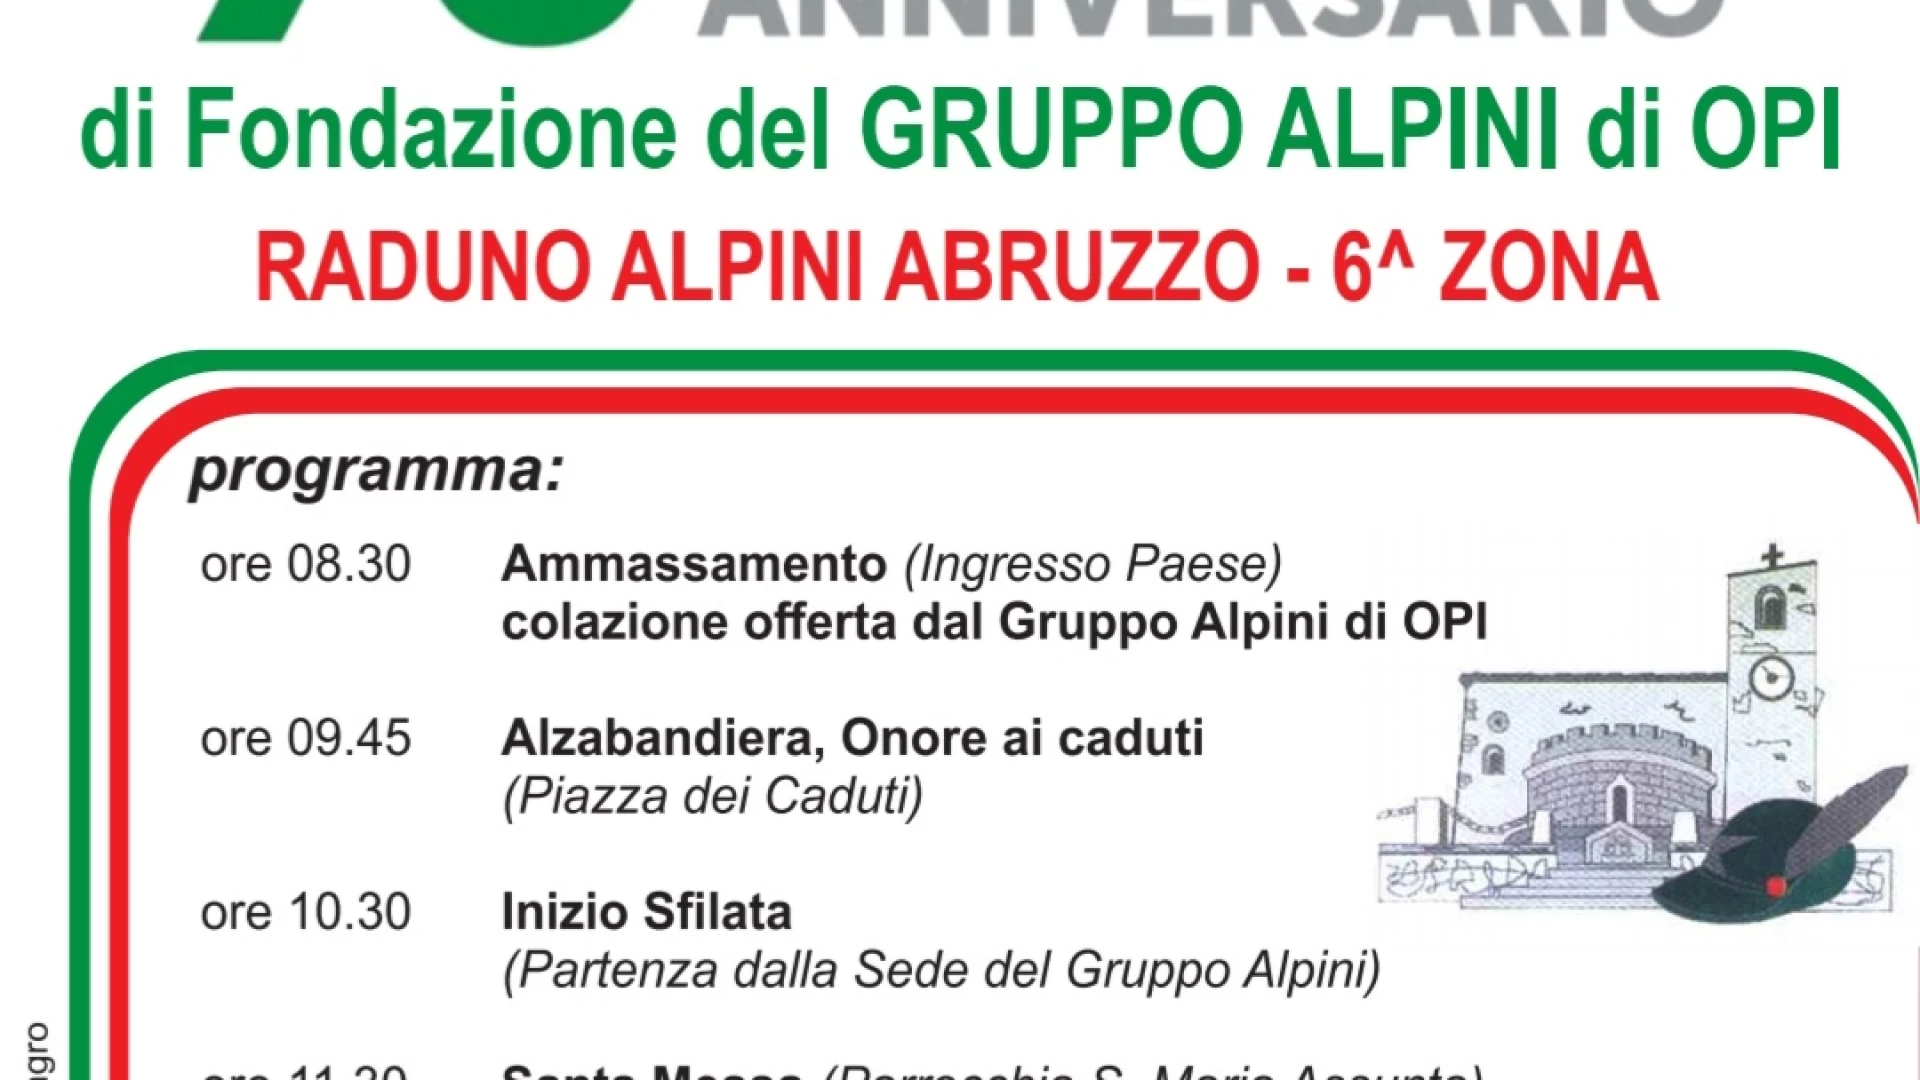 Alpini, domenica 1 ottobre il raduno Abruzzo sesta zona ad Opi. Il programma